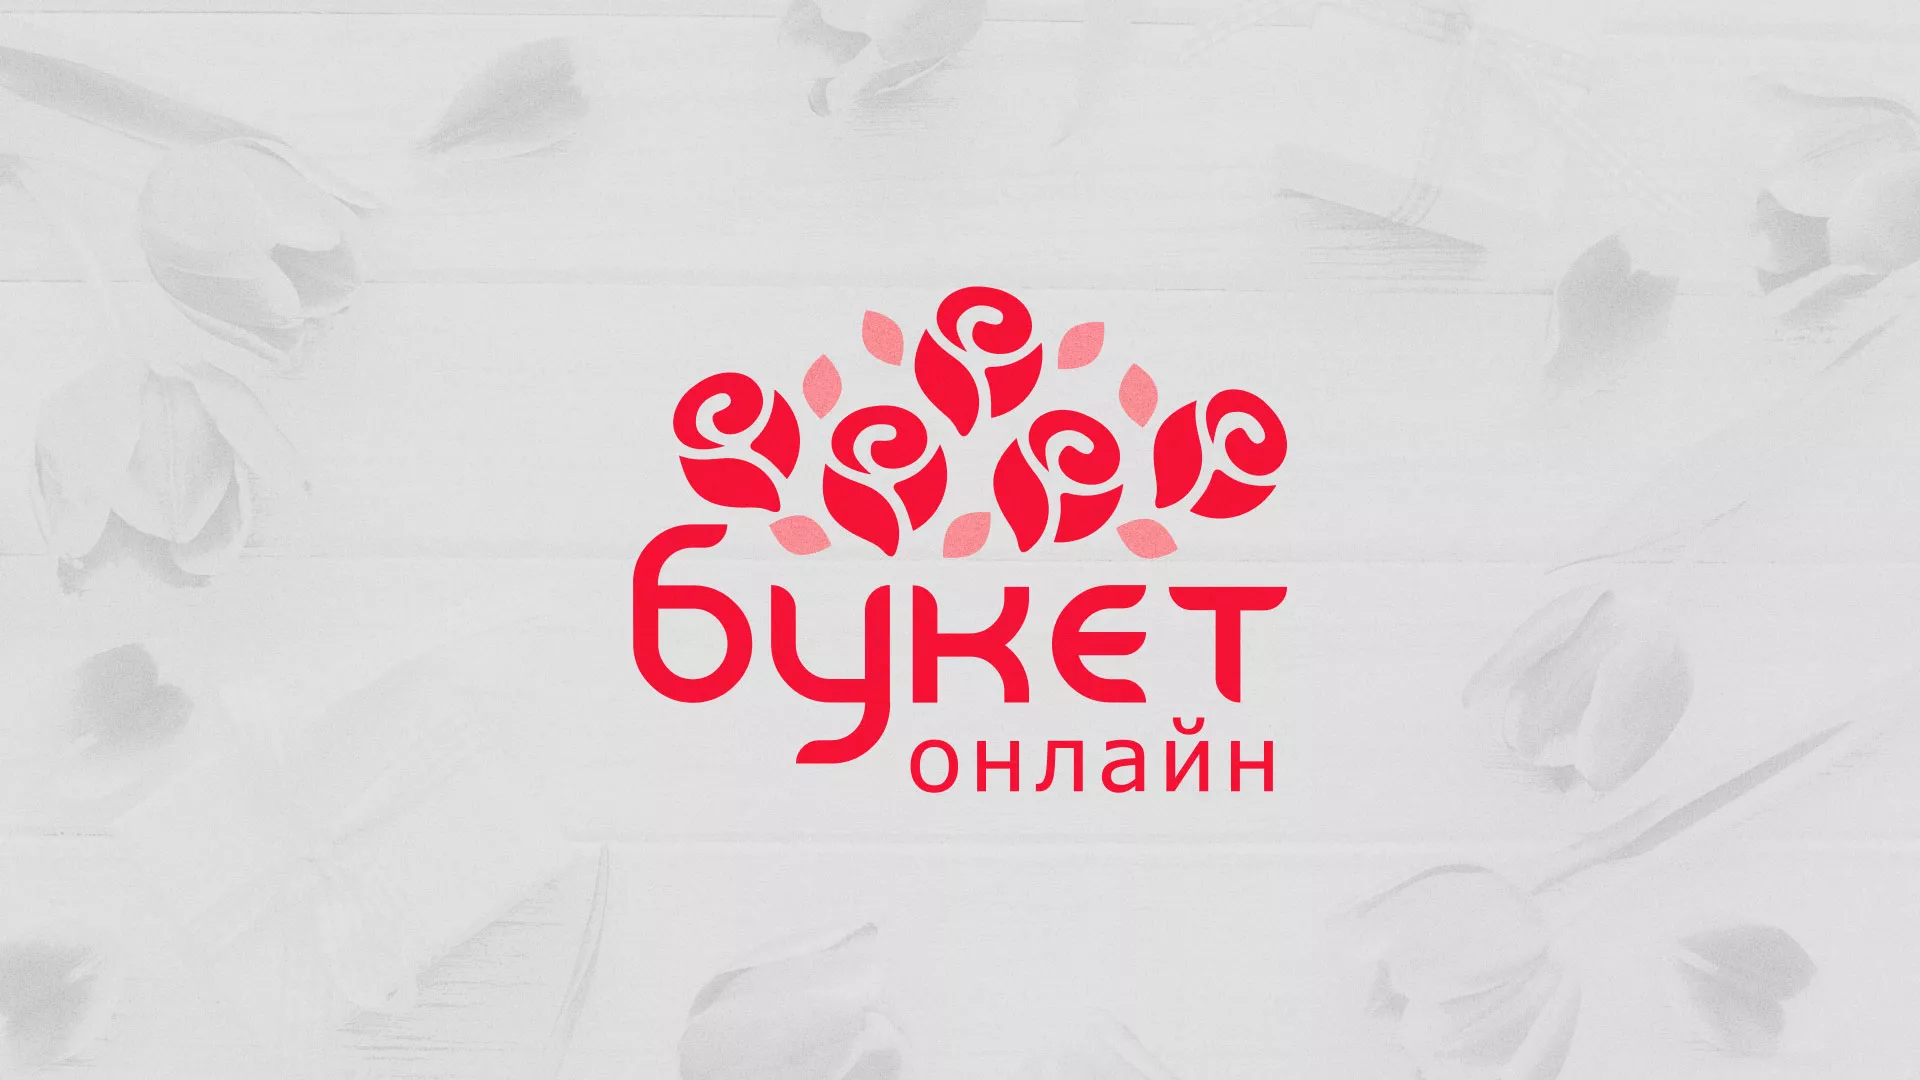 Создание интернет-магазина «Букет-онлайн» по цветам в Гурьевске